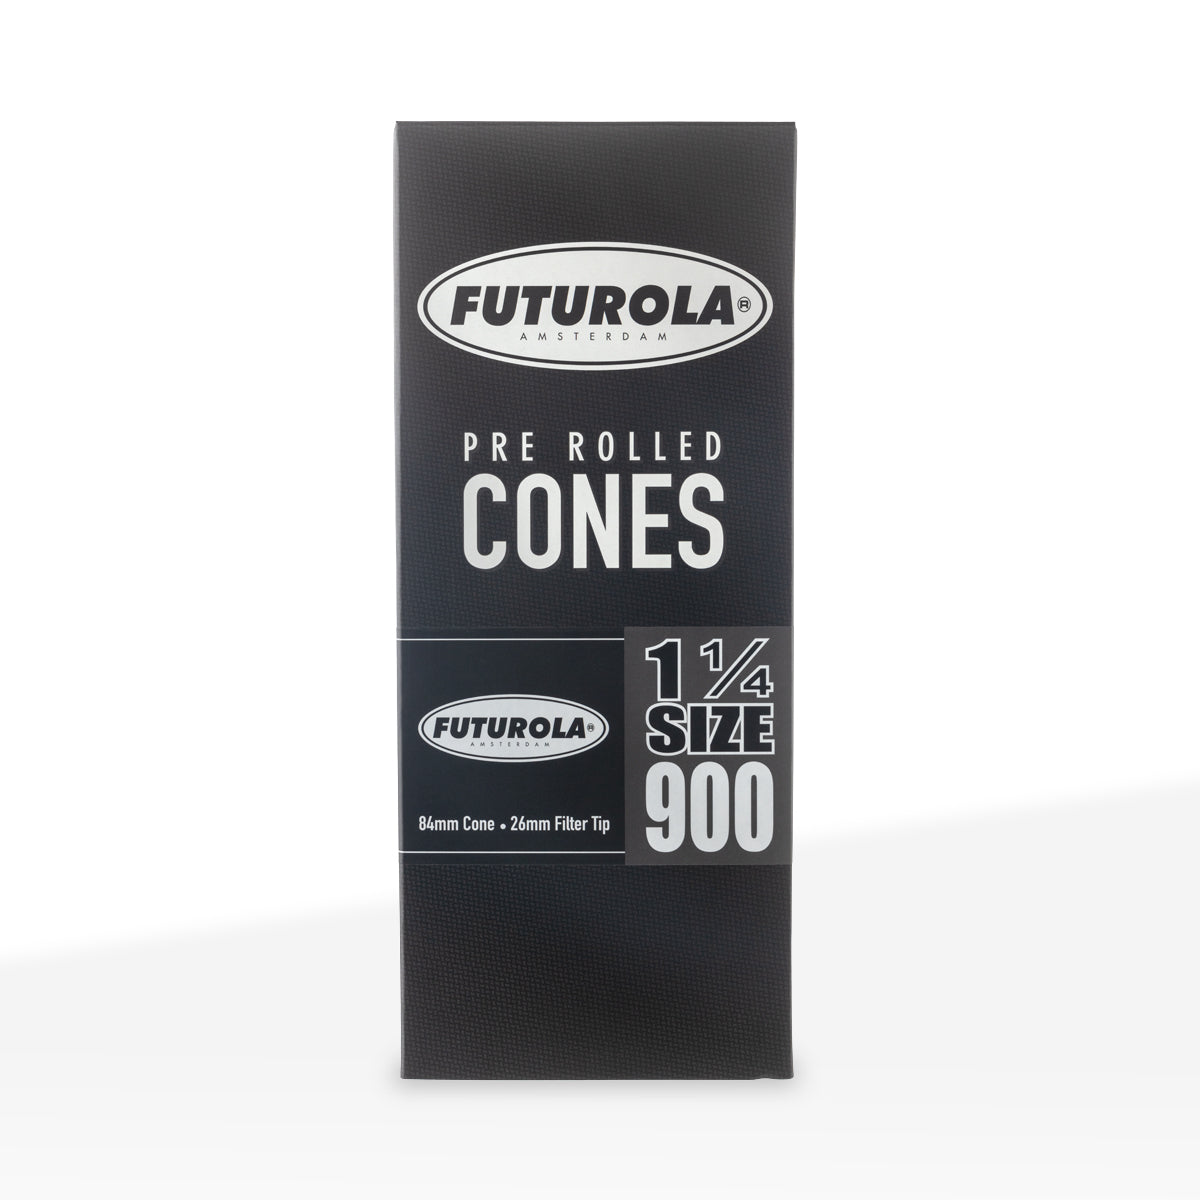 FUTUROLA® | Pre-Rolled Cones 1¼ Size | 84mm - White Paper - 900 Count